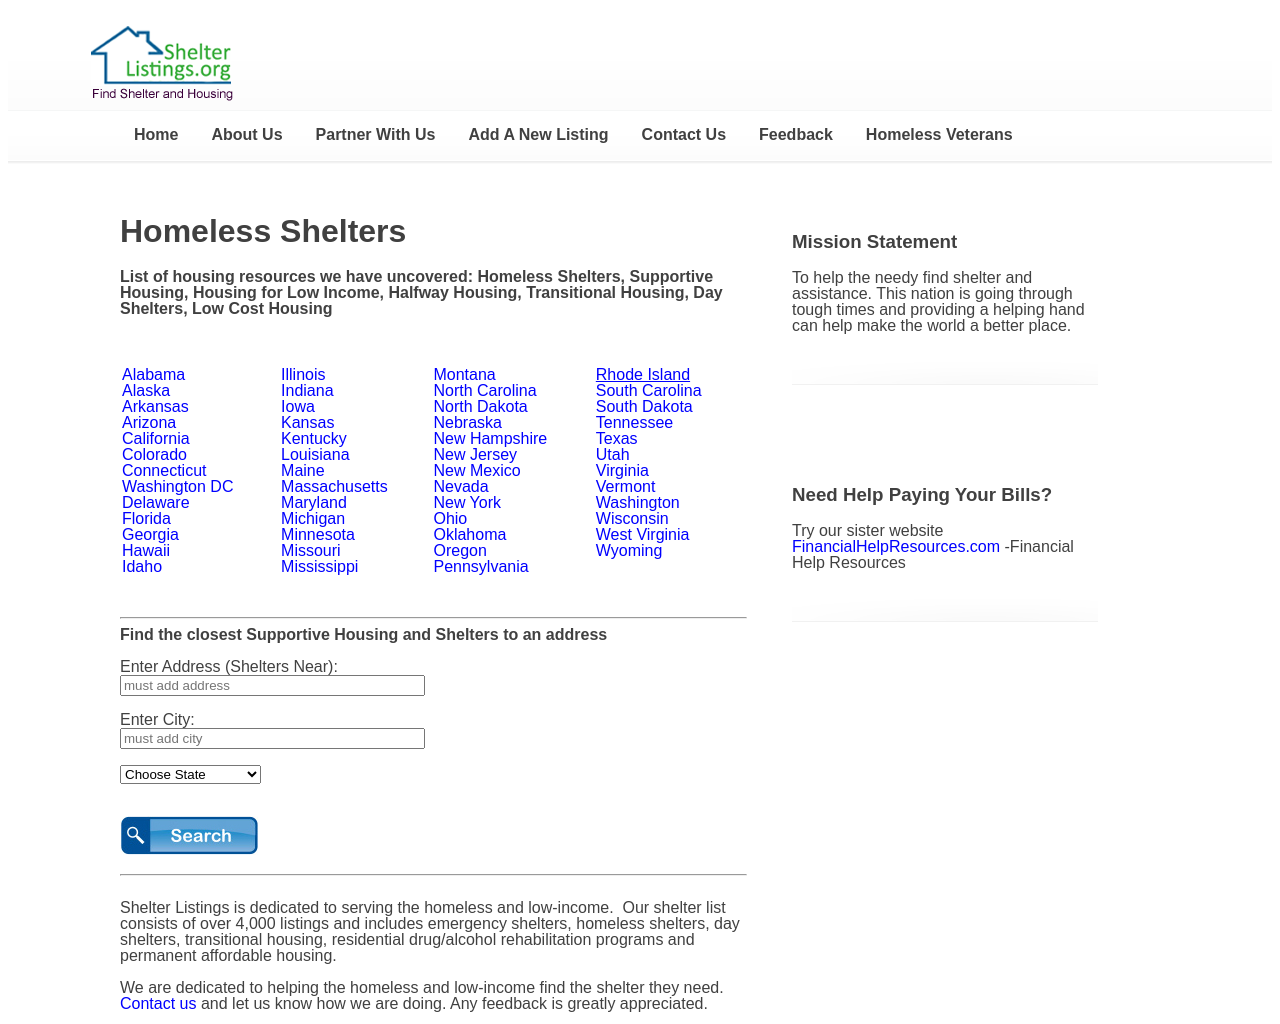 shelterlistings.org